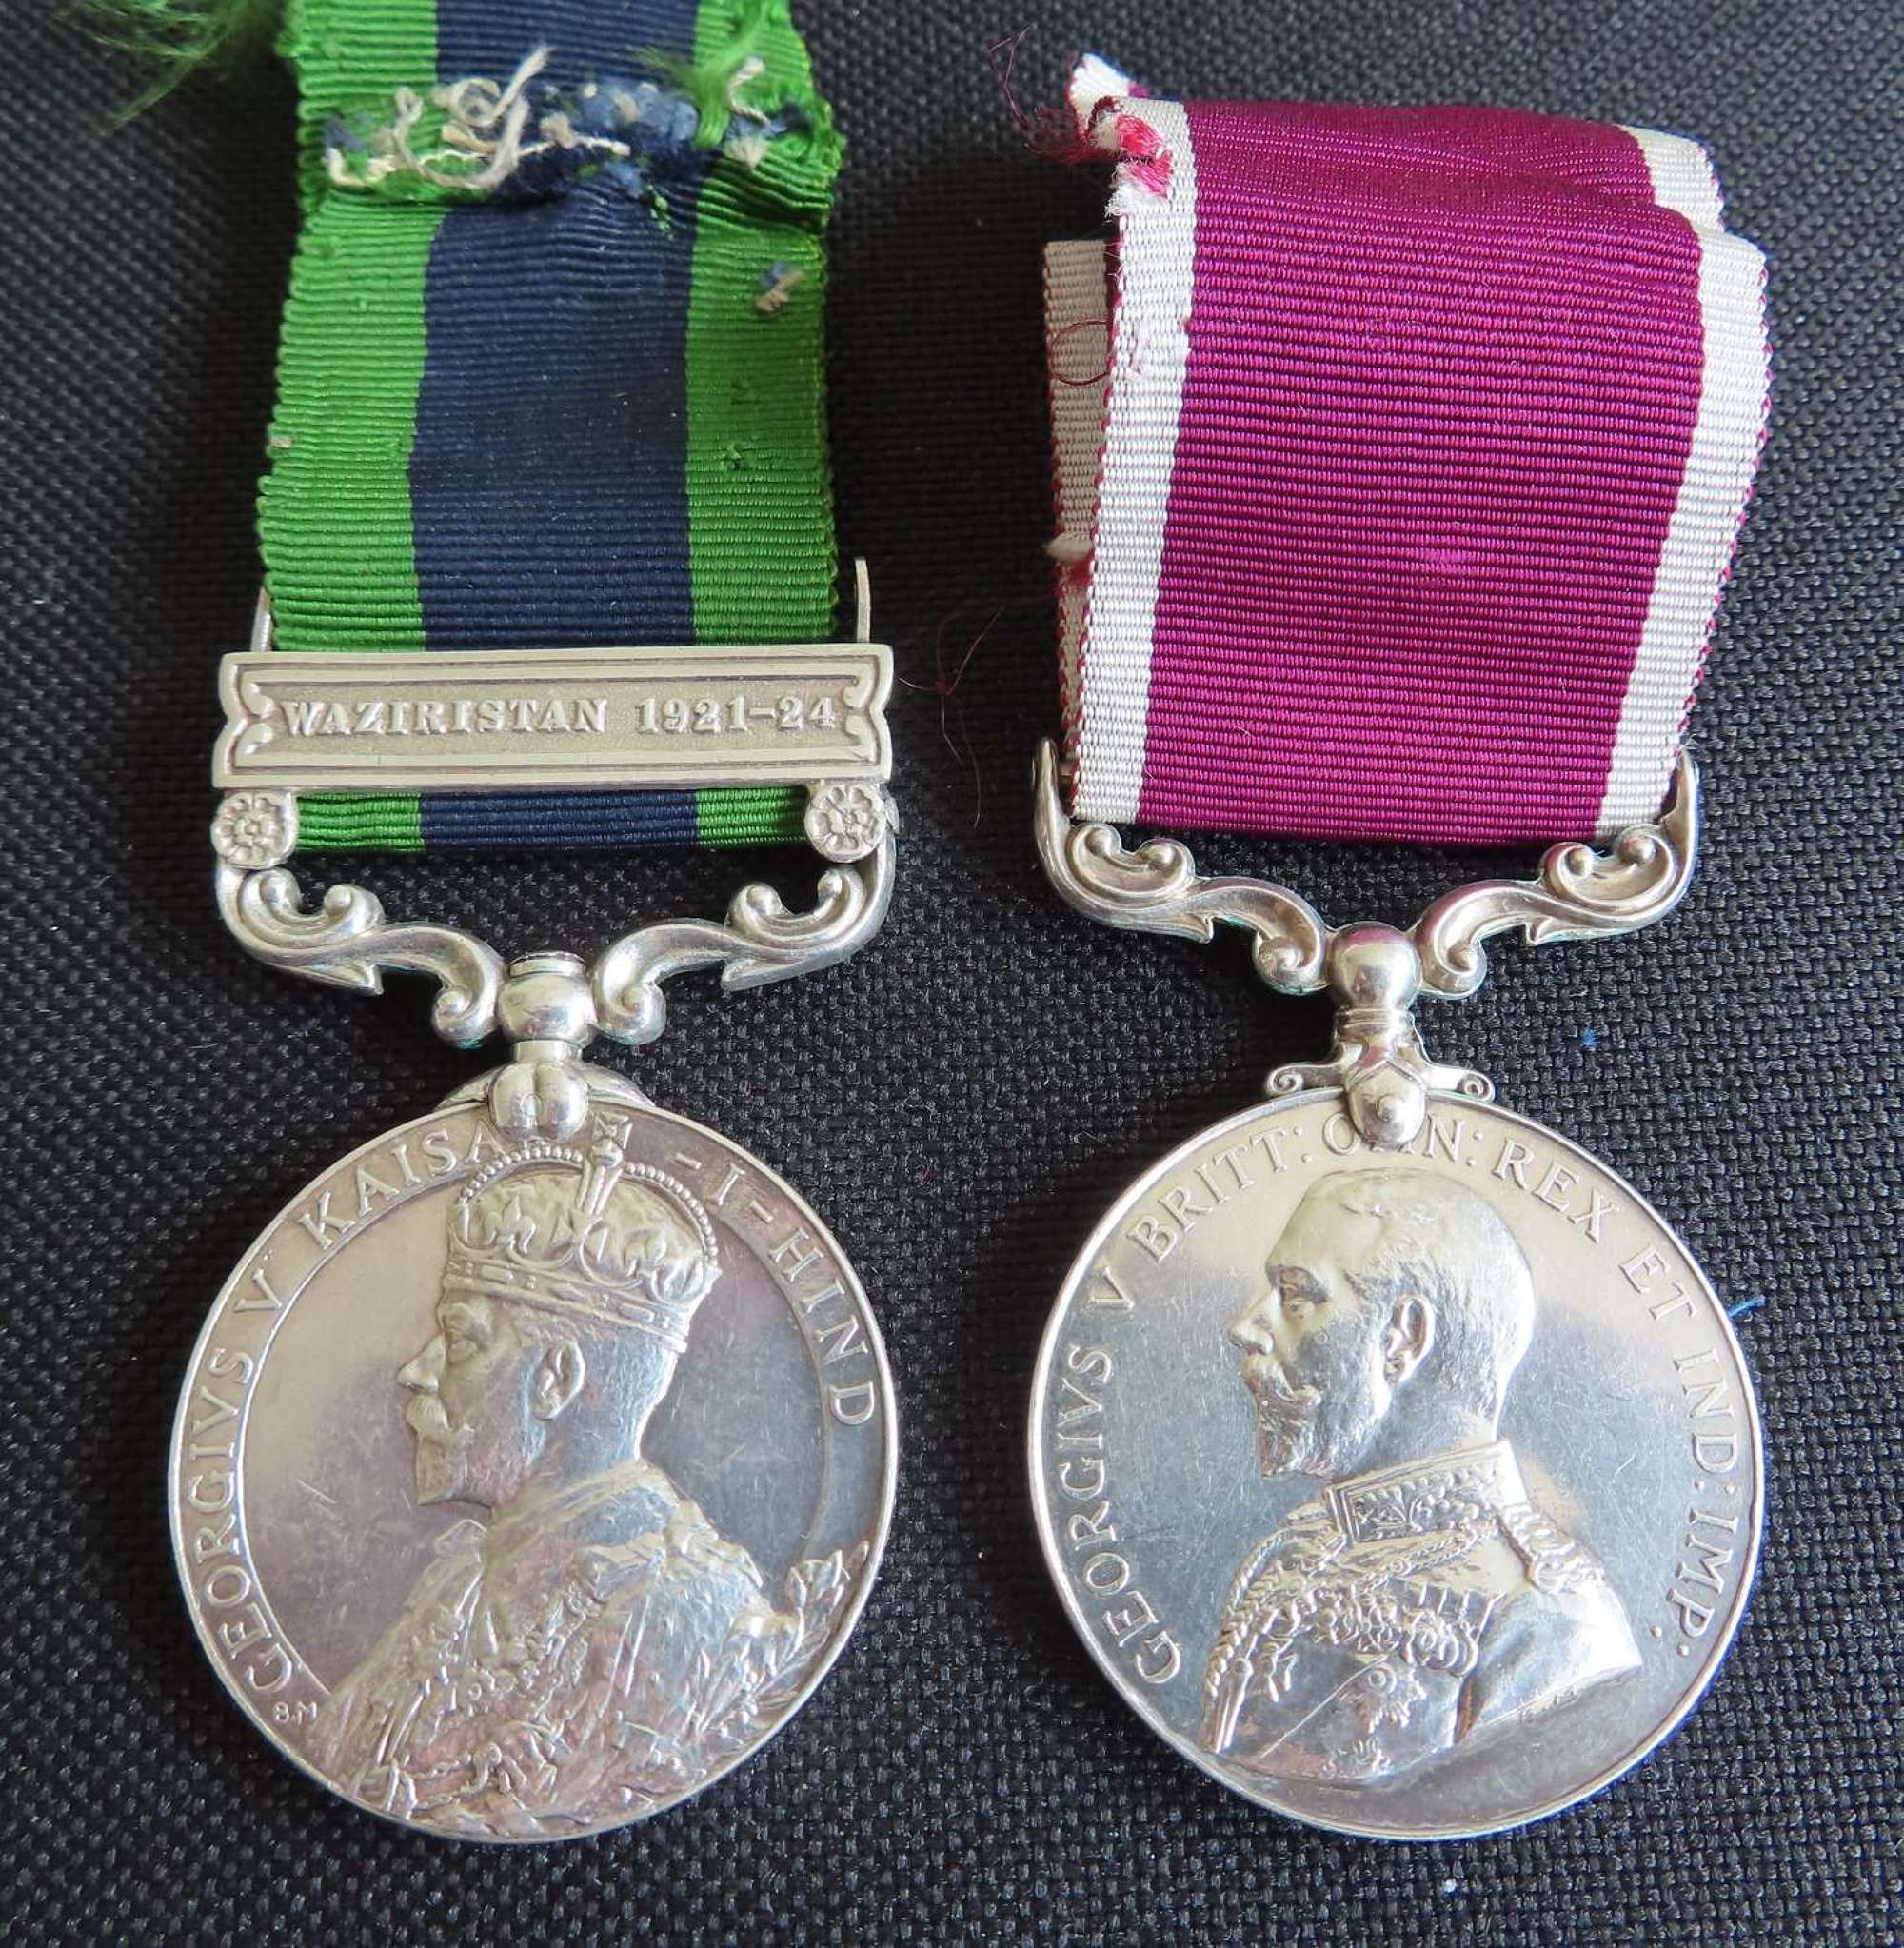 Waziristan 1921-24 IGS & LSGC medals awarded to S/Sjt W O Smith IAOC